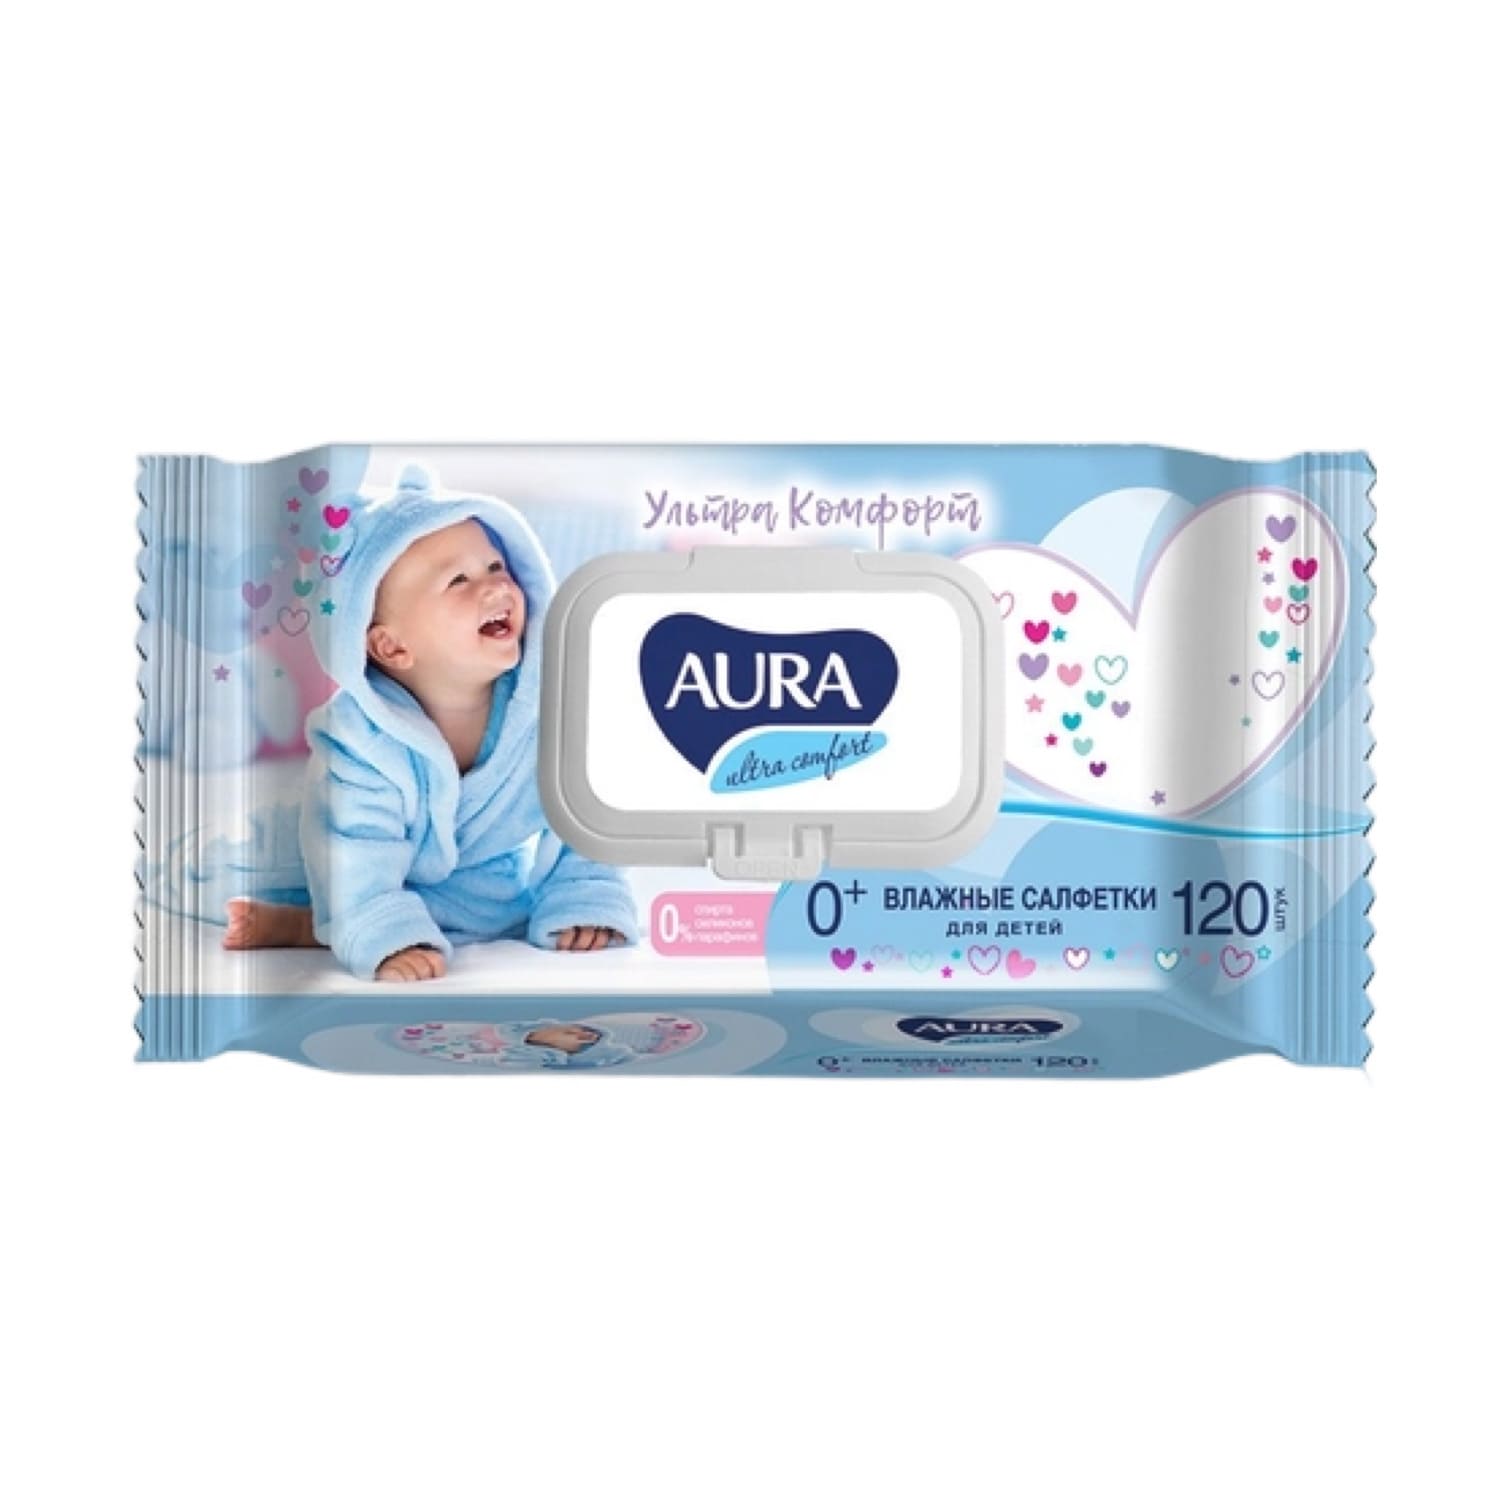 AURA Ultra Comfort Детские Влажные Салфетки с Экстрактом Алоэ и Витамином Е 120шт